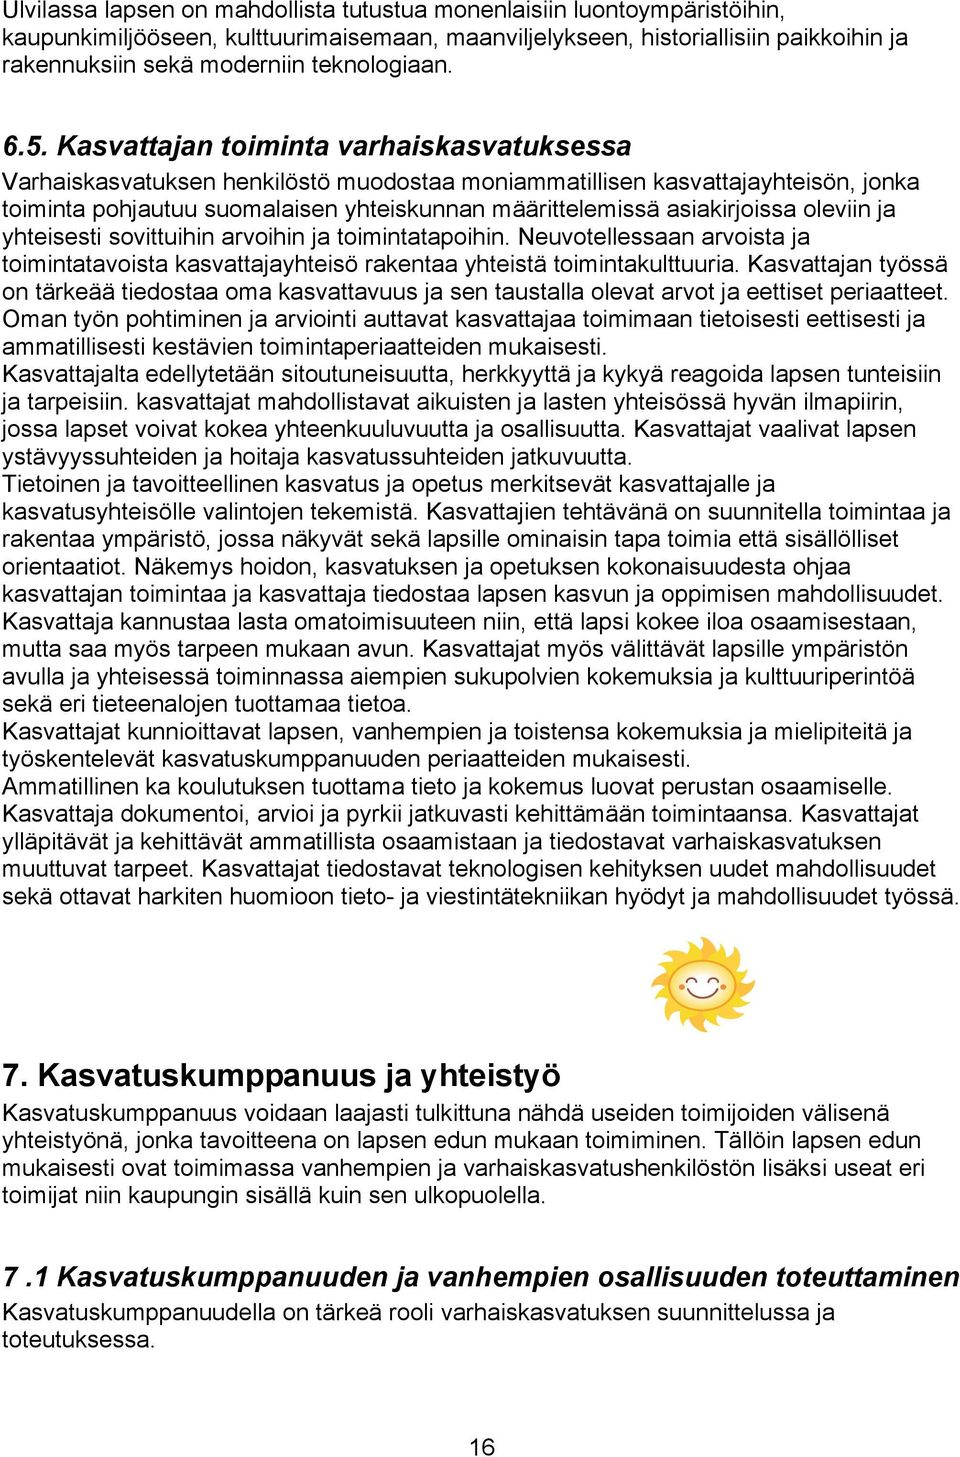 Kasvattajan toiminta varhaiskasvatuksessa Varhaiskasvatuksen henkilöstö muodostaa moniammatillisen kasvattajayhteisön, jonka toiminta pohjautuu suomalaisen yhteiskunnan määrittelemissä asiakirjoissa